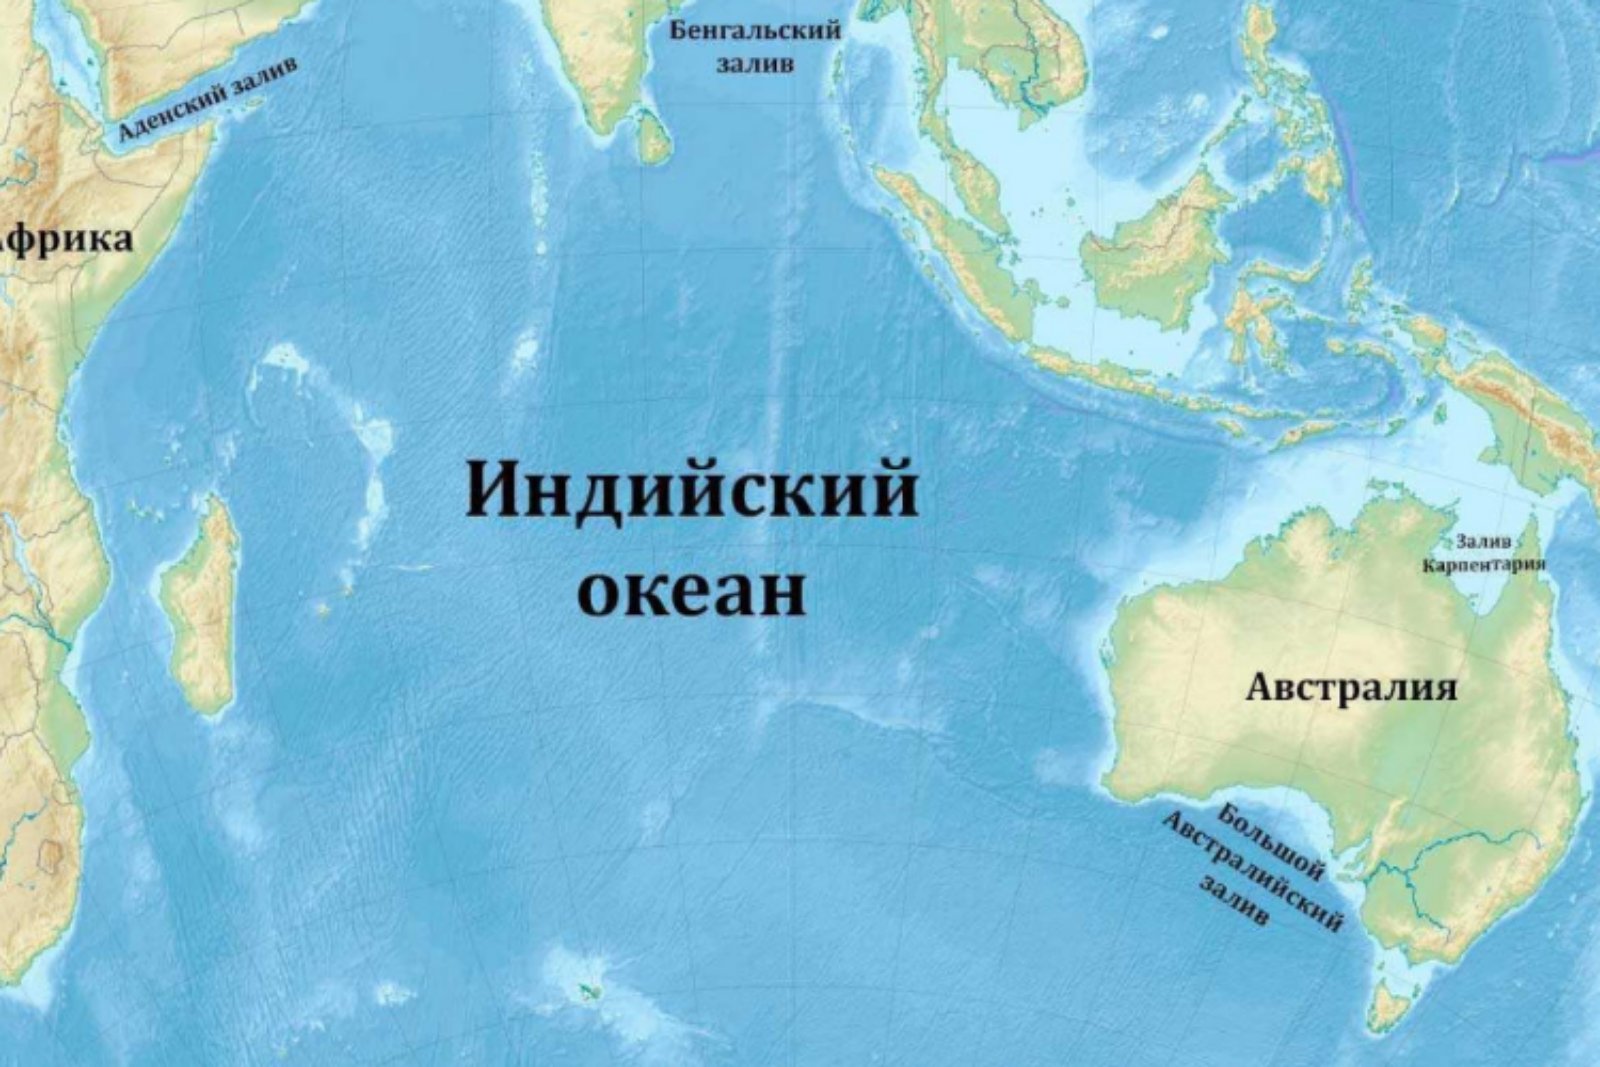 Форма тихого океана. Оманский залив на карте индийского океана. Заливы и проливы индийского океана на карте. Карта индийского океана с морями заливами и проливами. Индийский океан на карте.